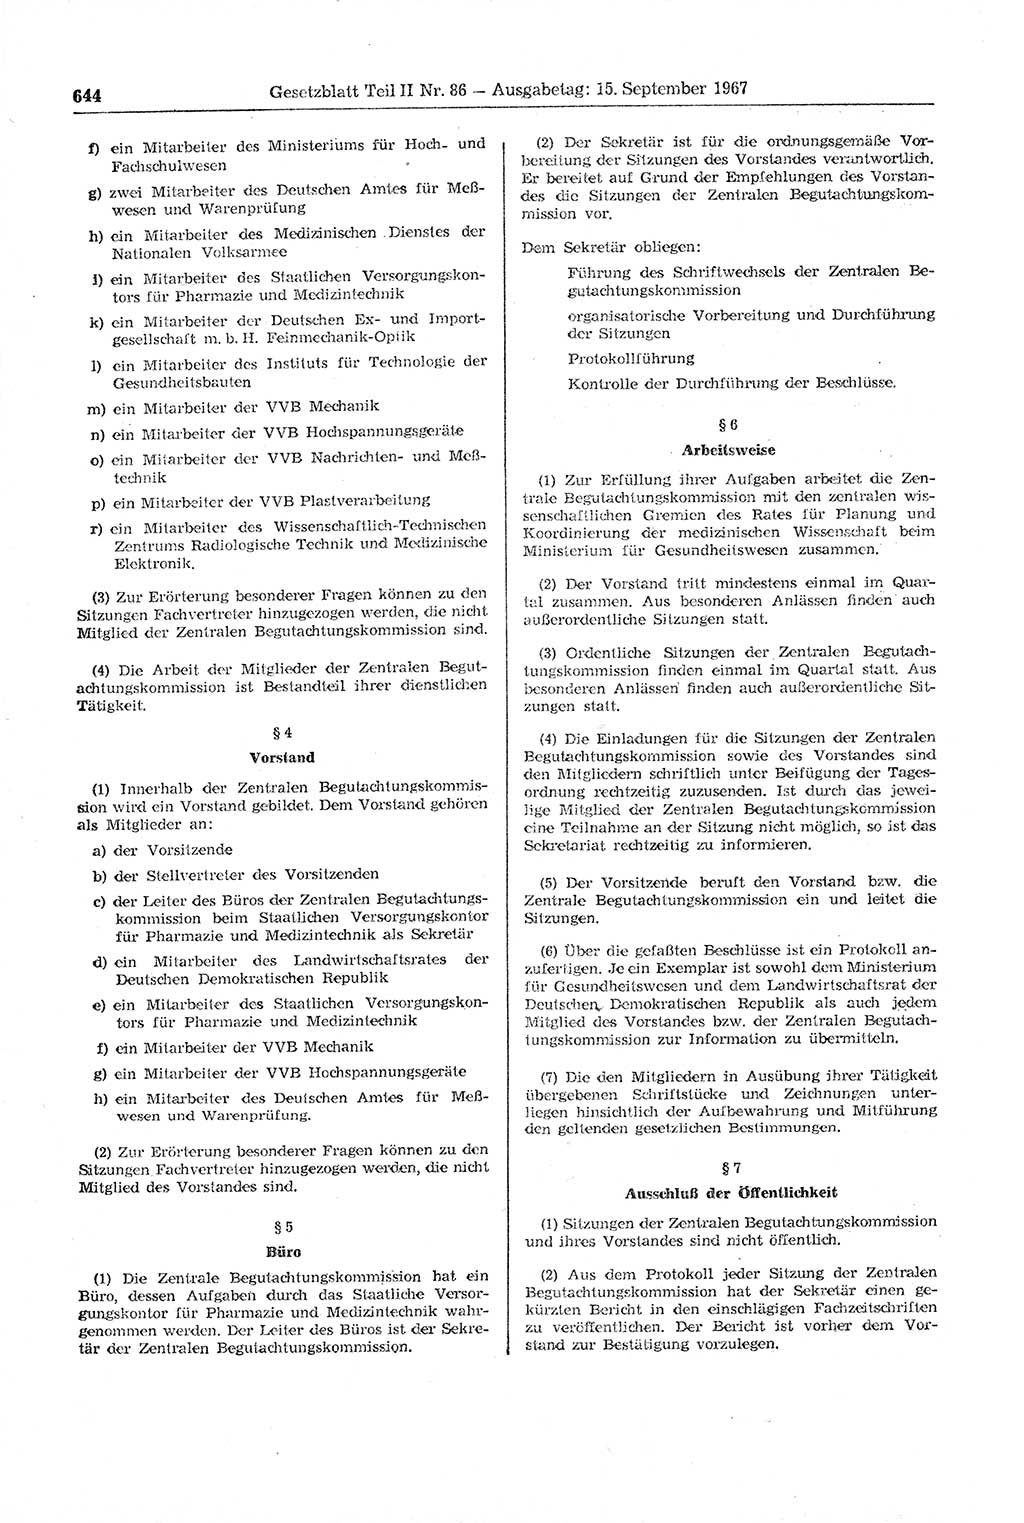 Gesetzblatt (GBl.) der Deutschen Demokratischen Republik (DDR) Teil ⅠⅠ 1967, Seite 644 (GBl. DDR ⅠⅠ 1967, S. 644)